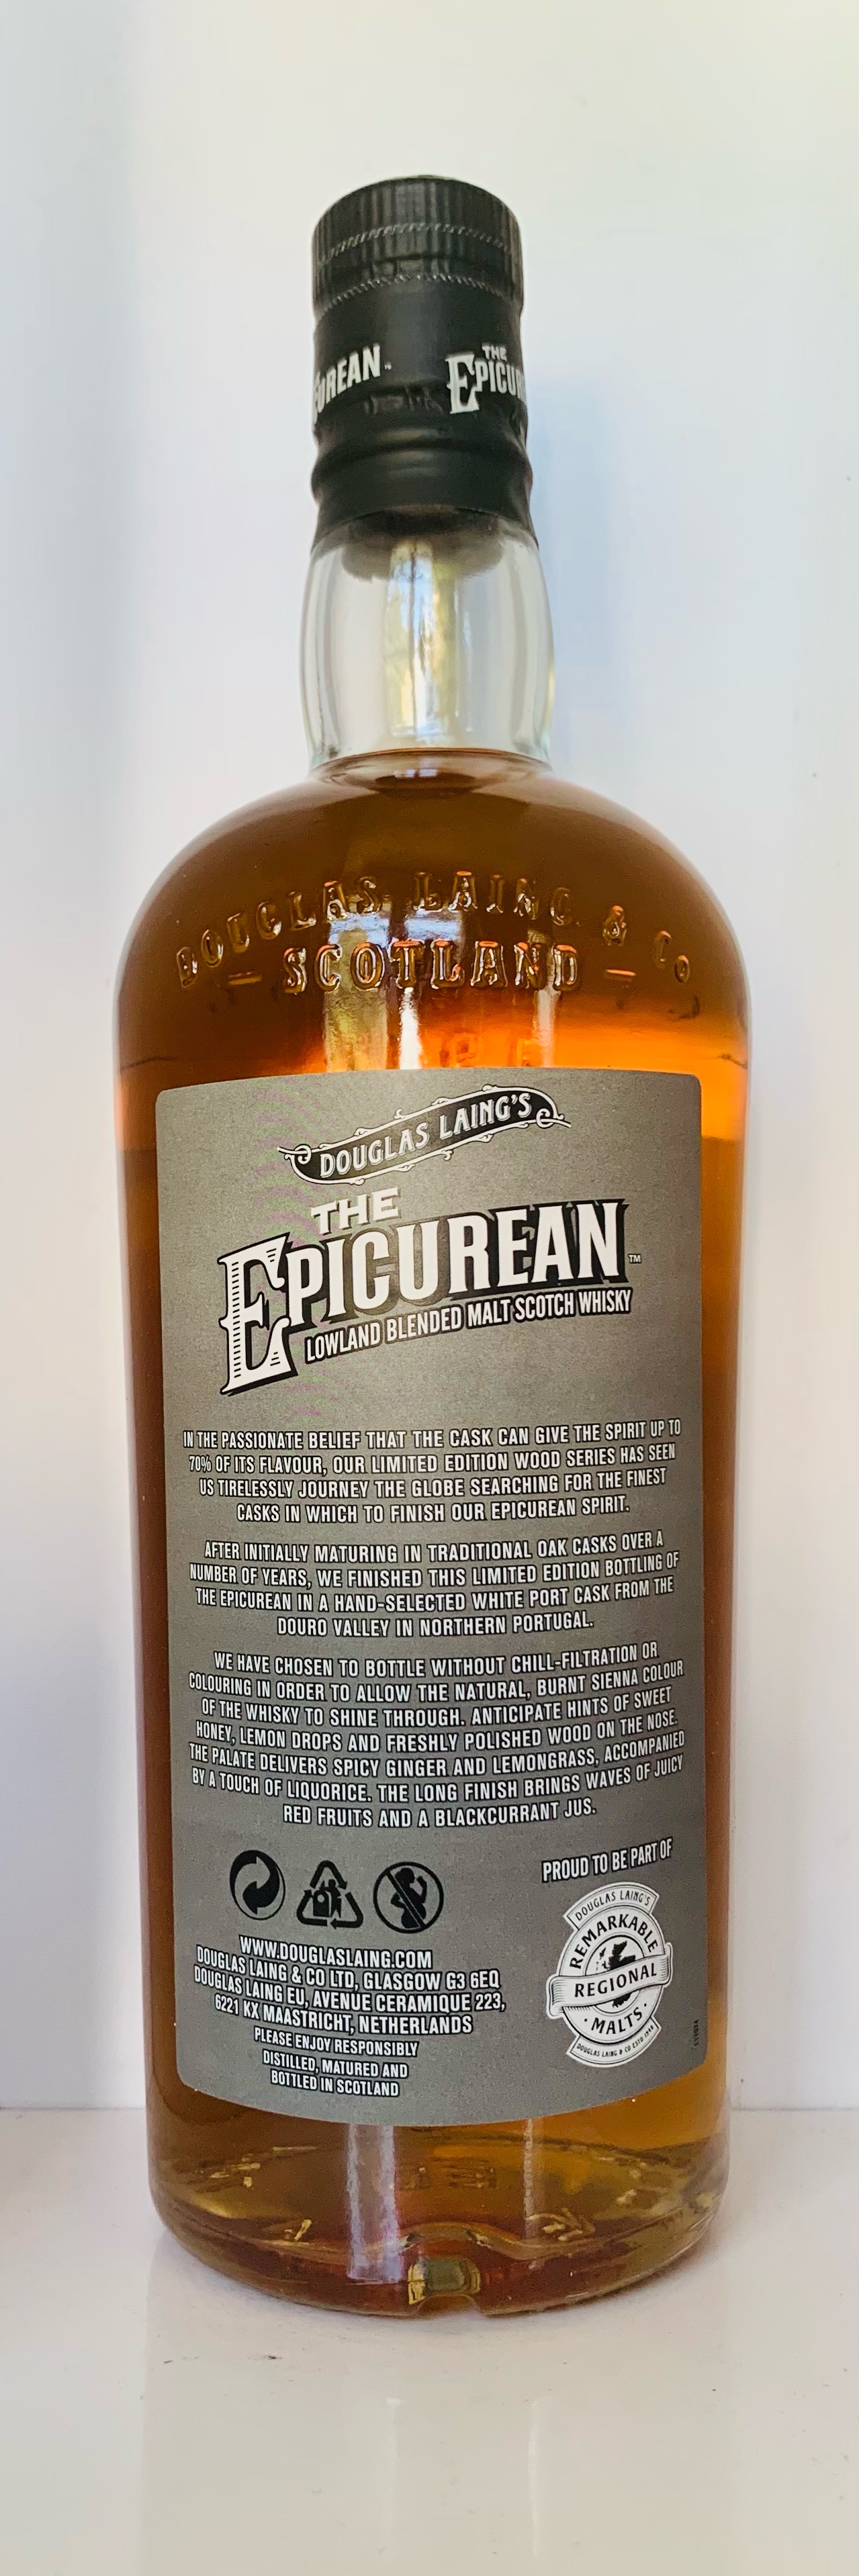 The Epicurean White Port Cask finish Edition DL